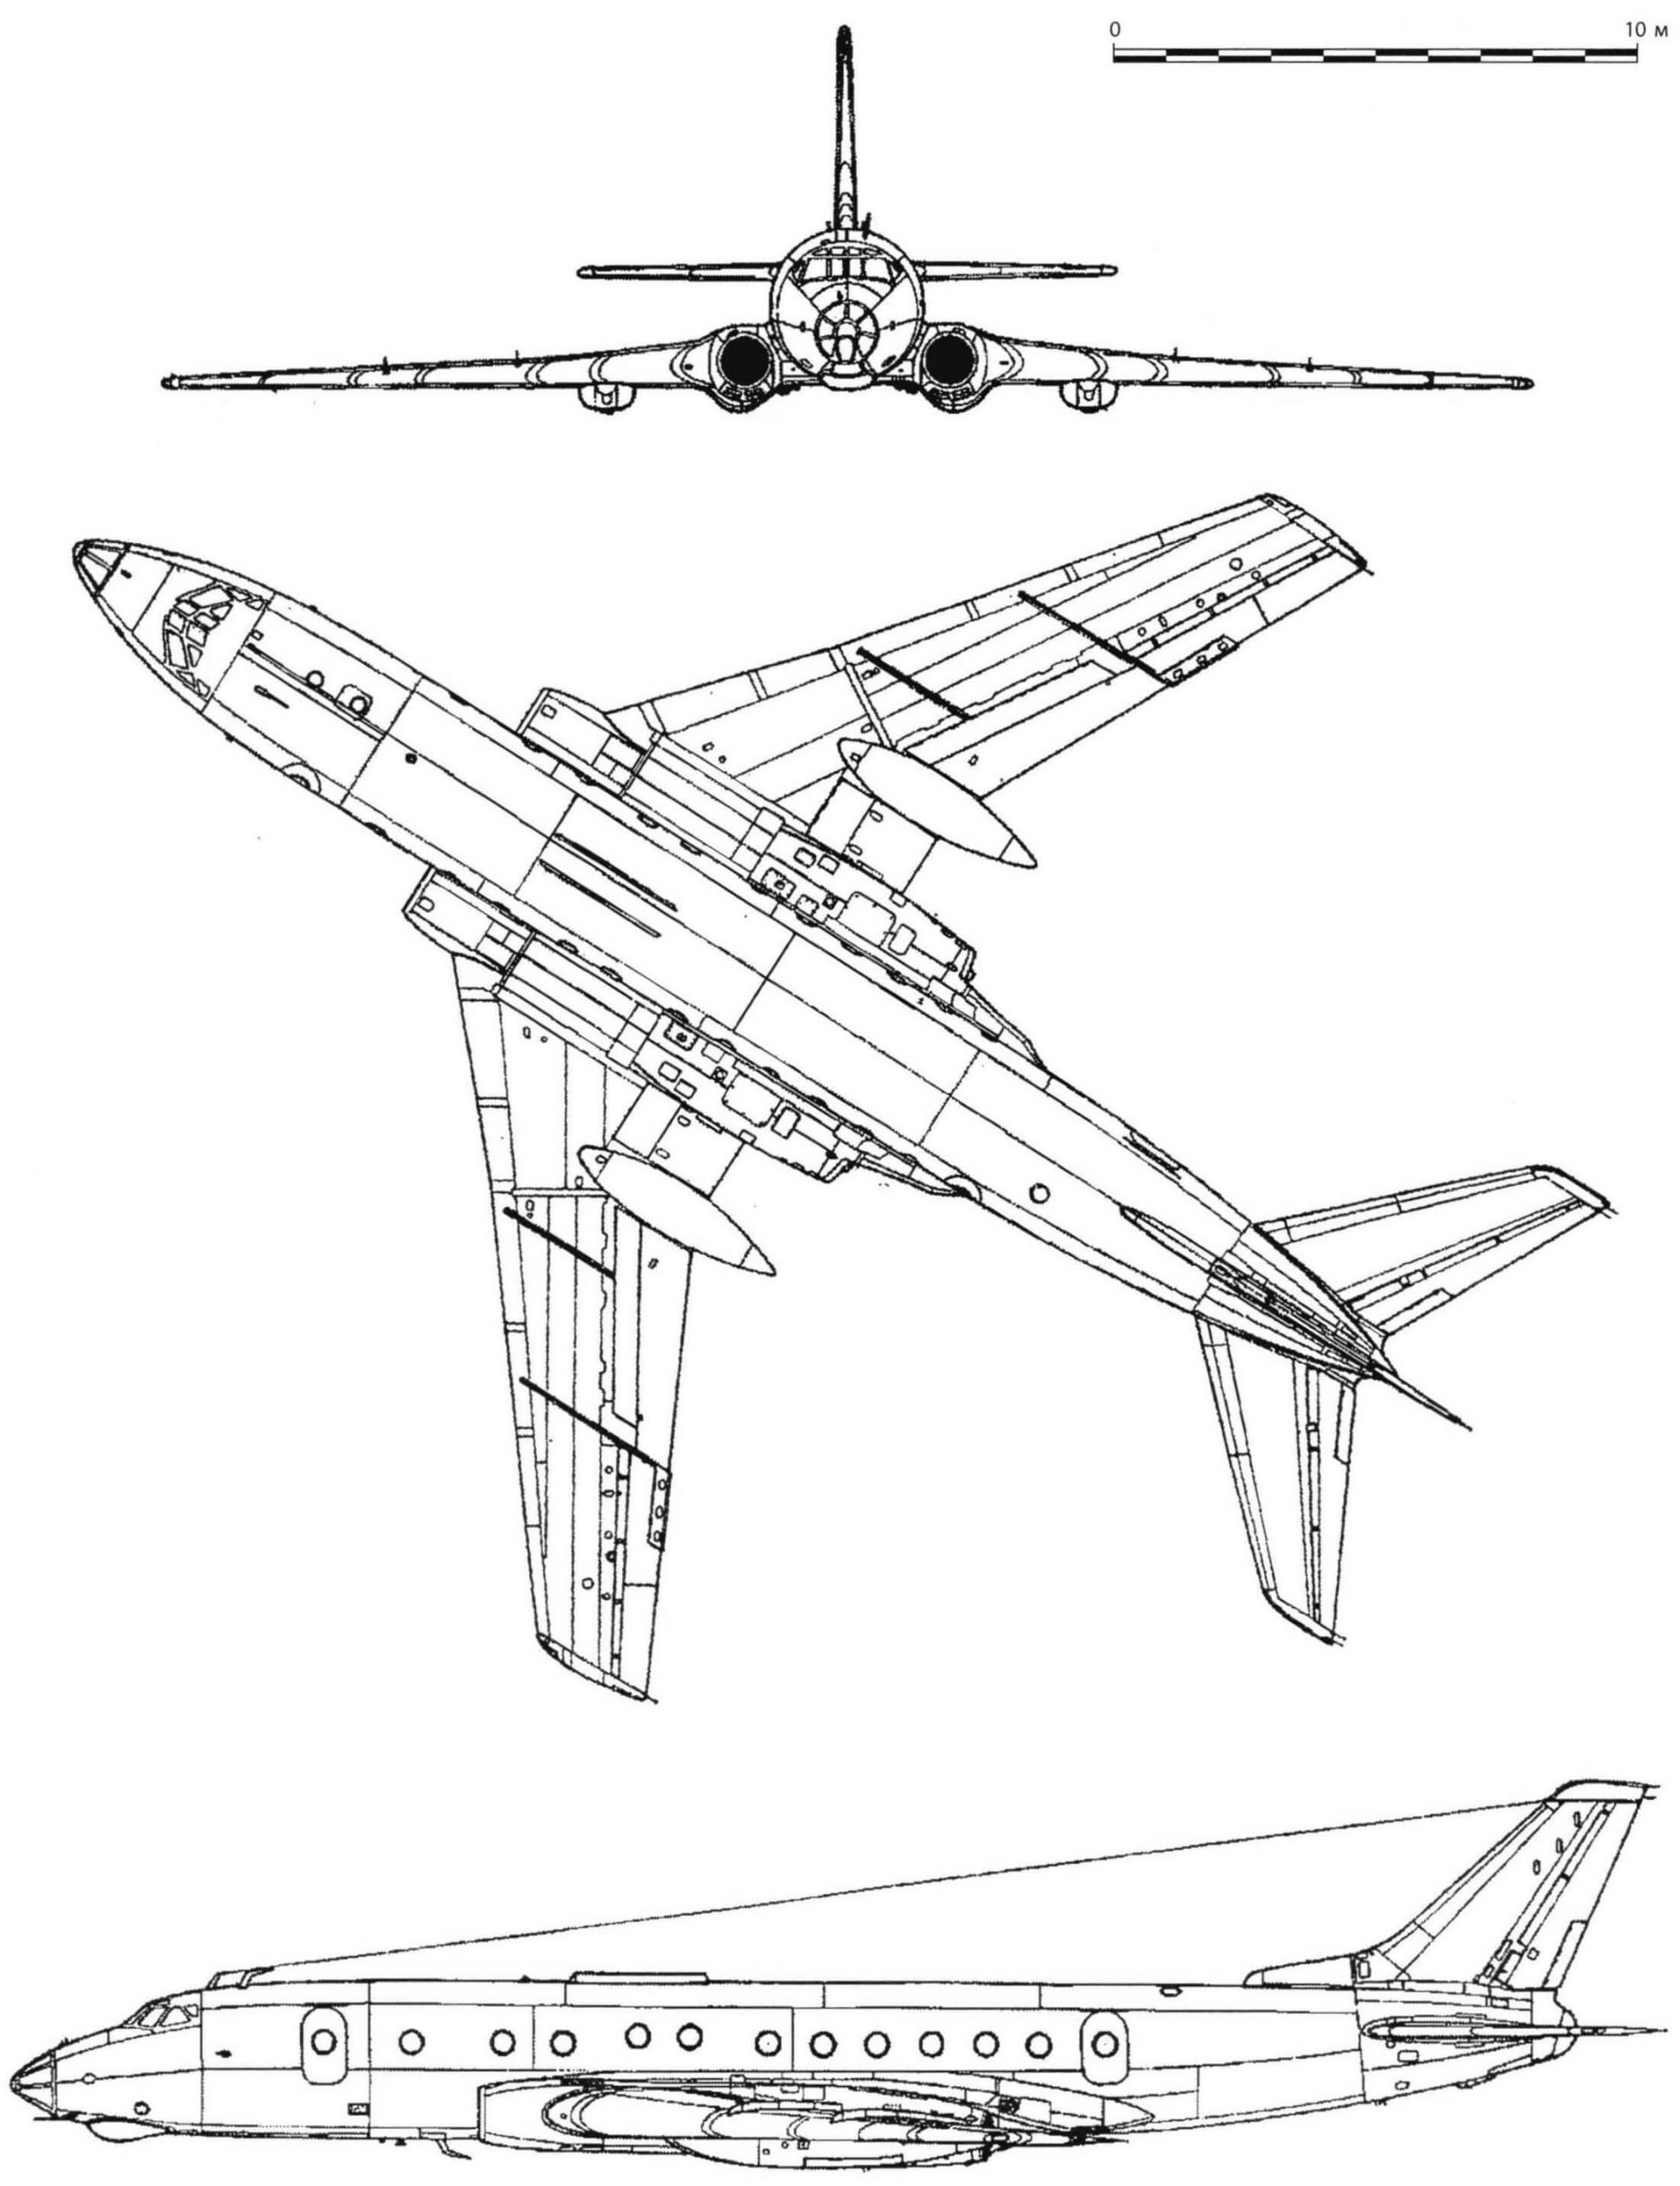 Ту-124 - самолет для авиалиний малой протяженности